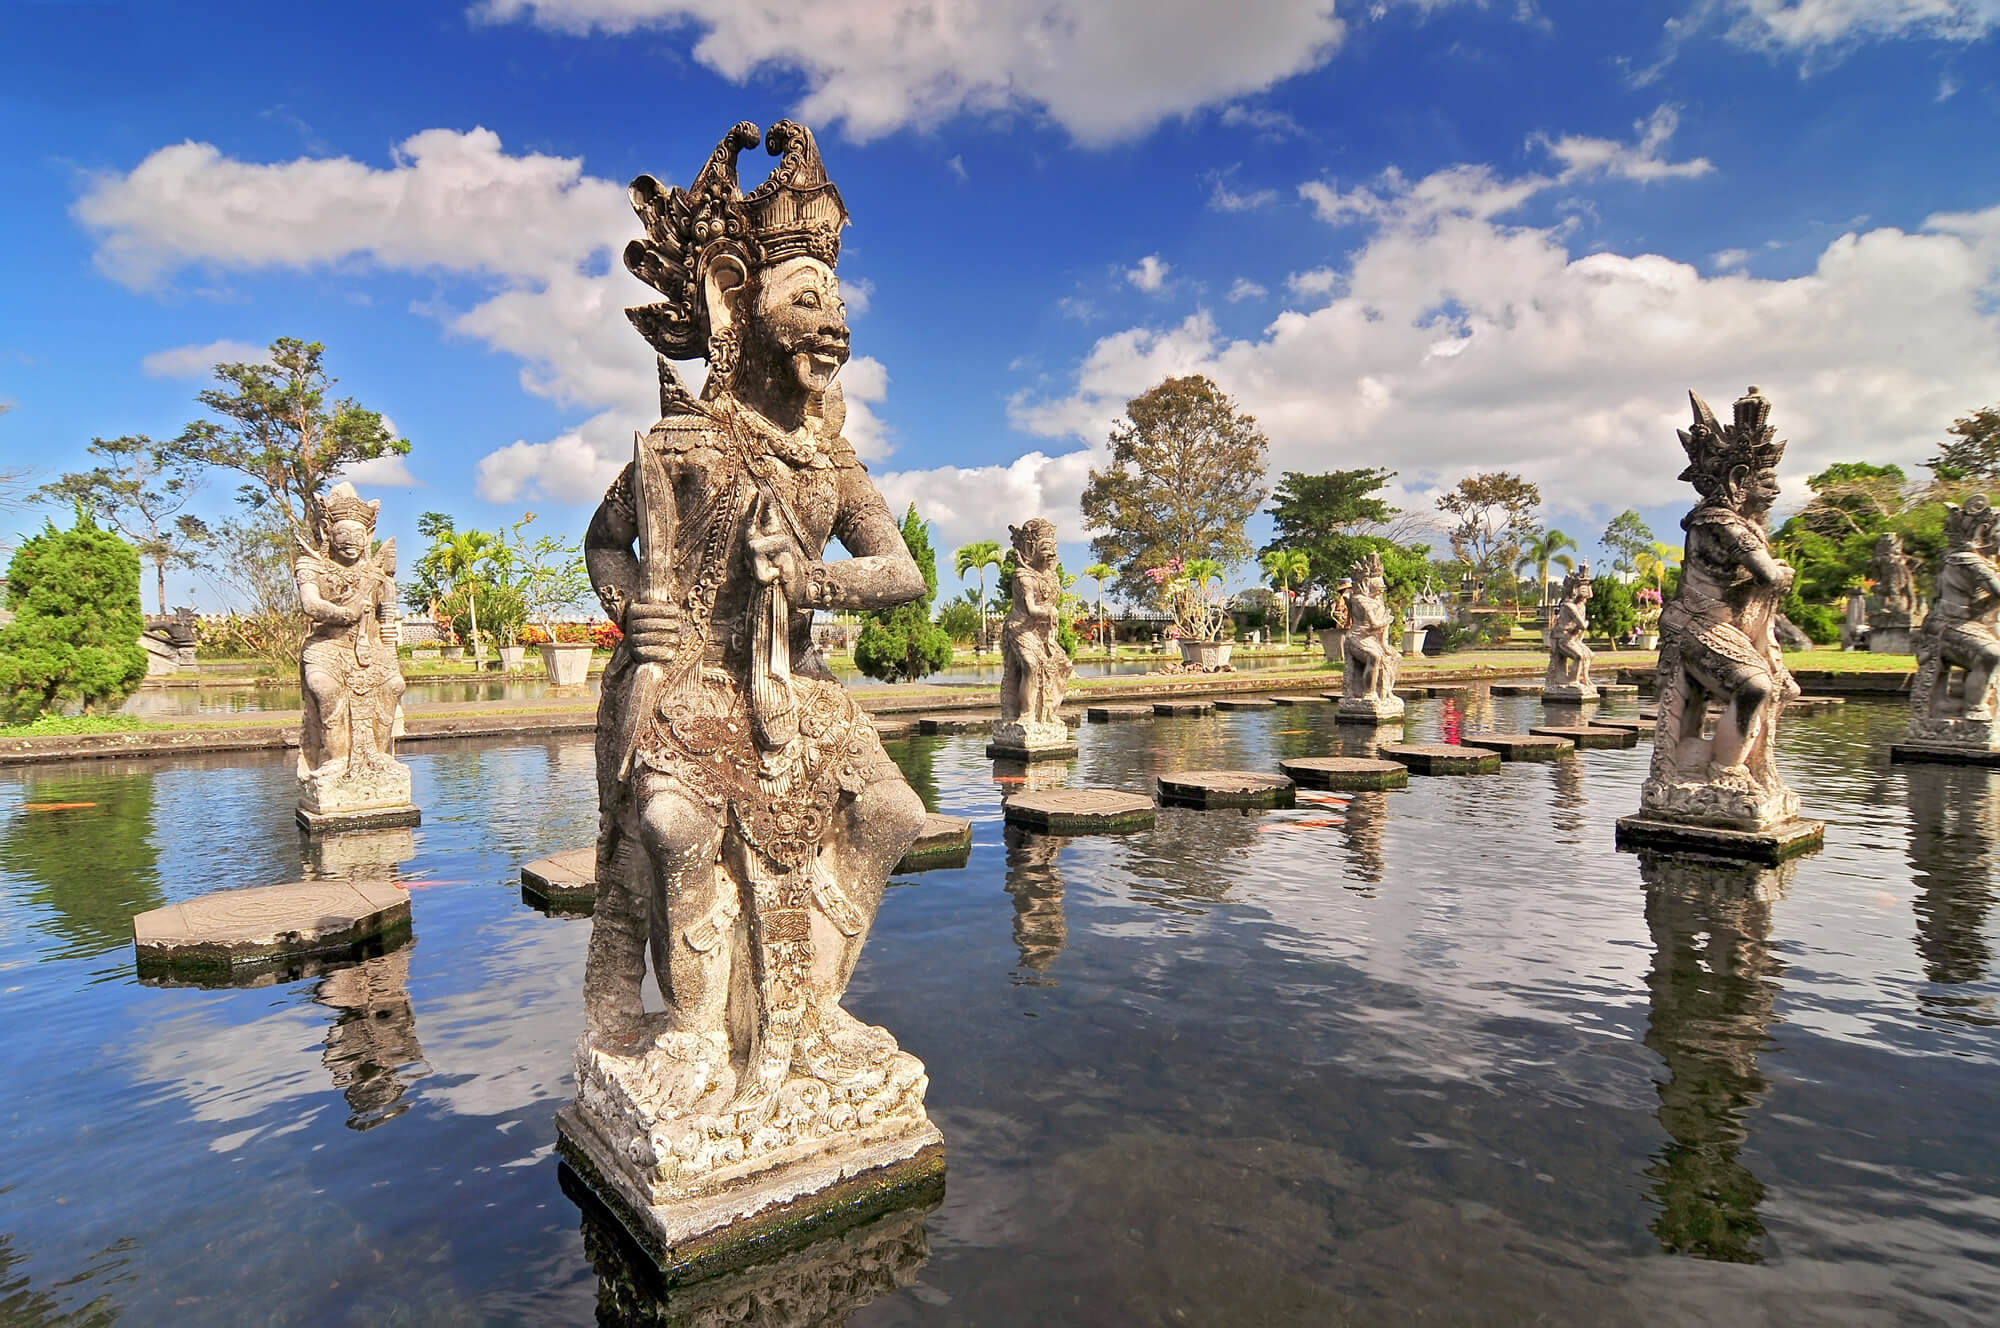 Tirtagangga Water Palace, Bali